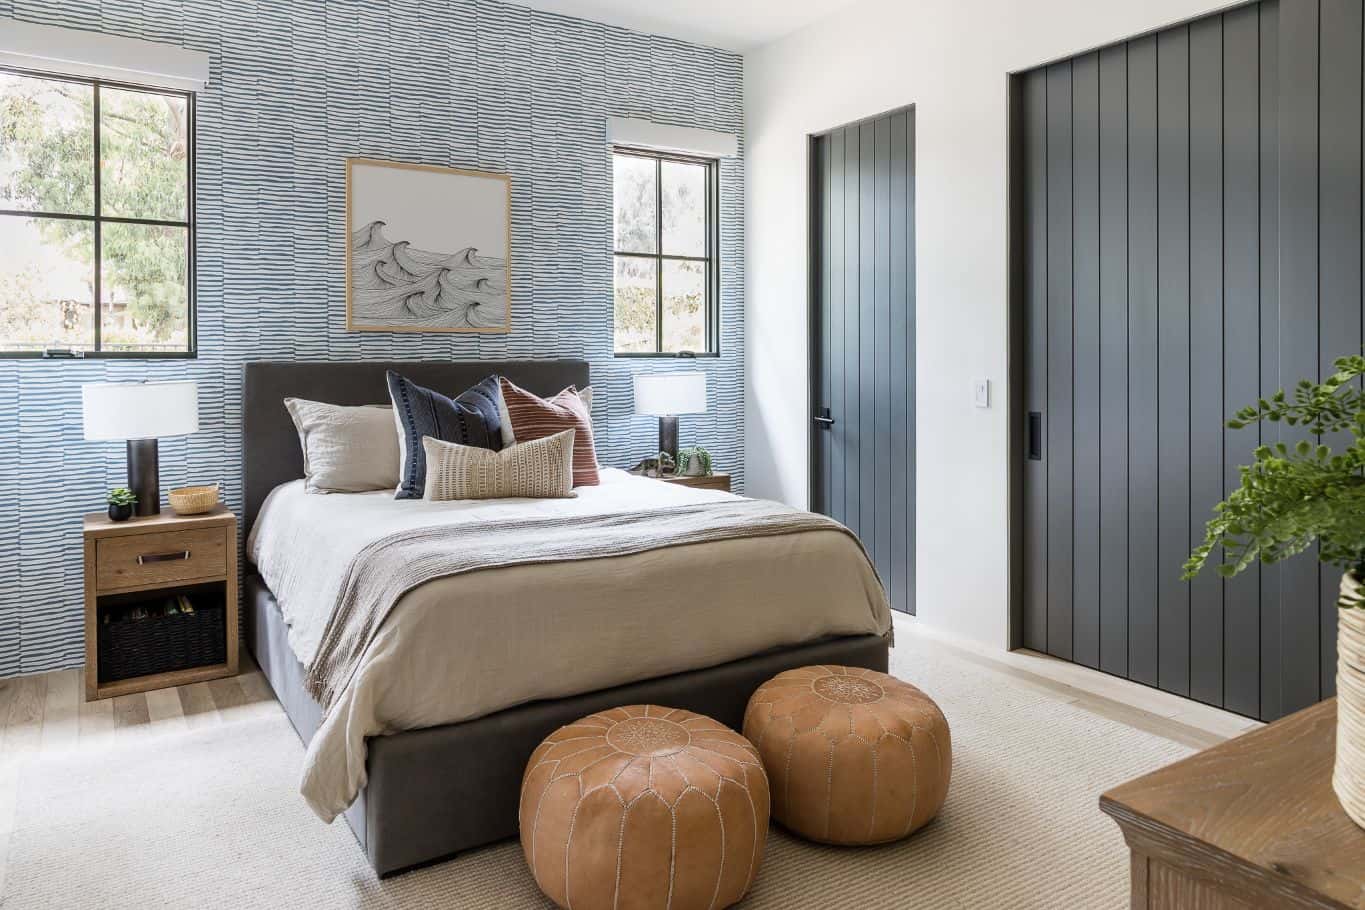 La Jolla Boys Bedroom Designs: The Look P.2 - Mindy Gayer Design